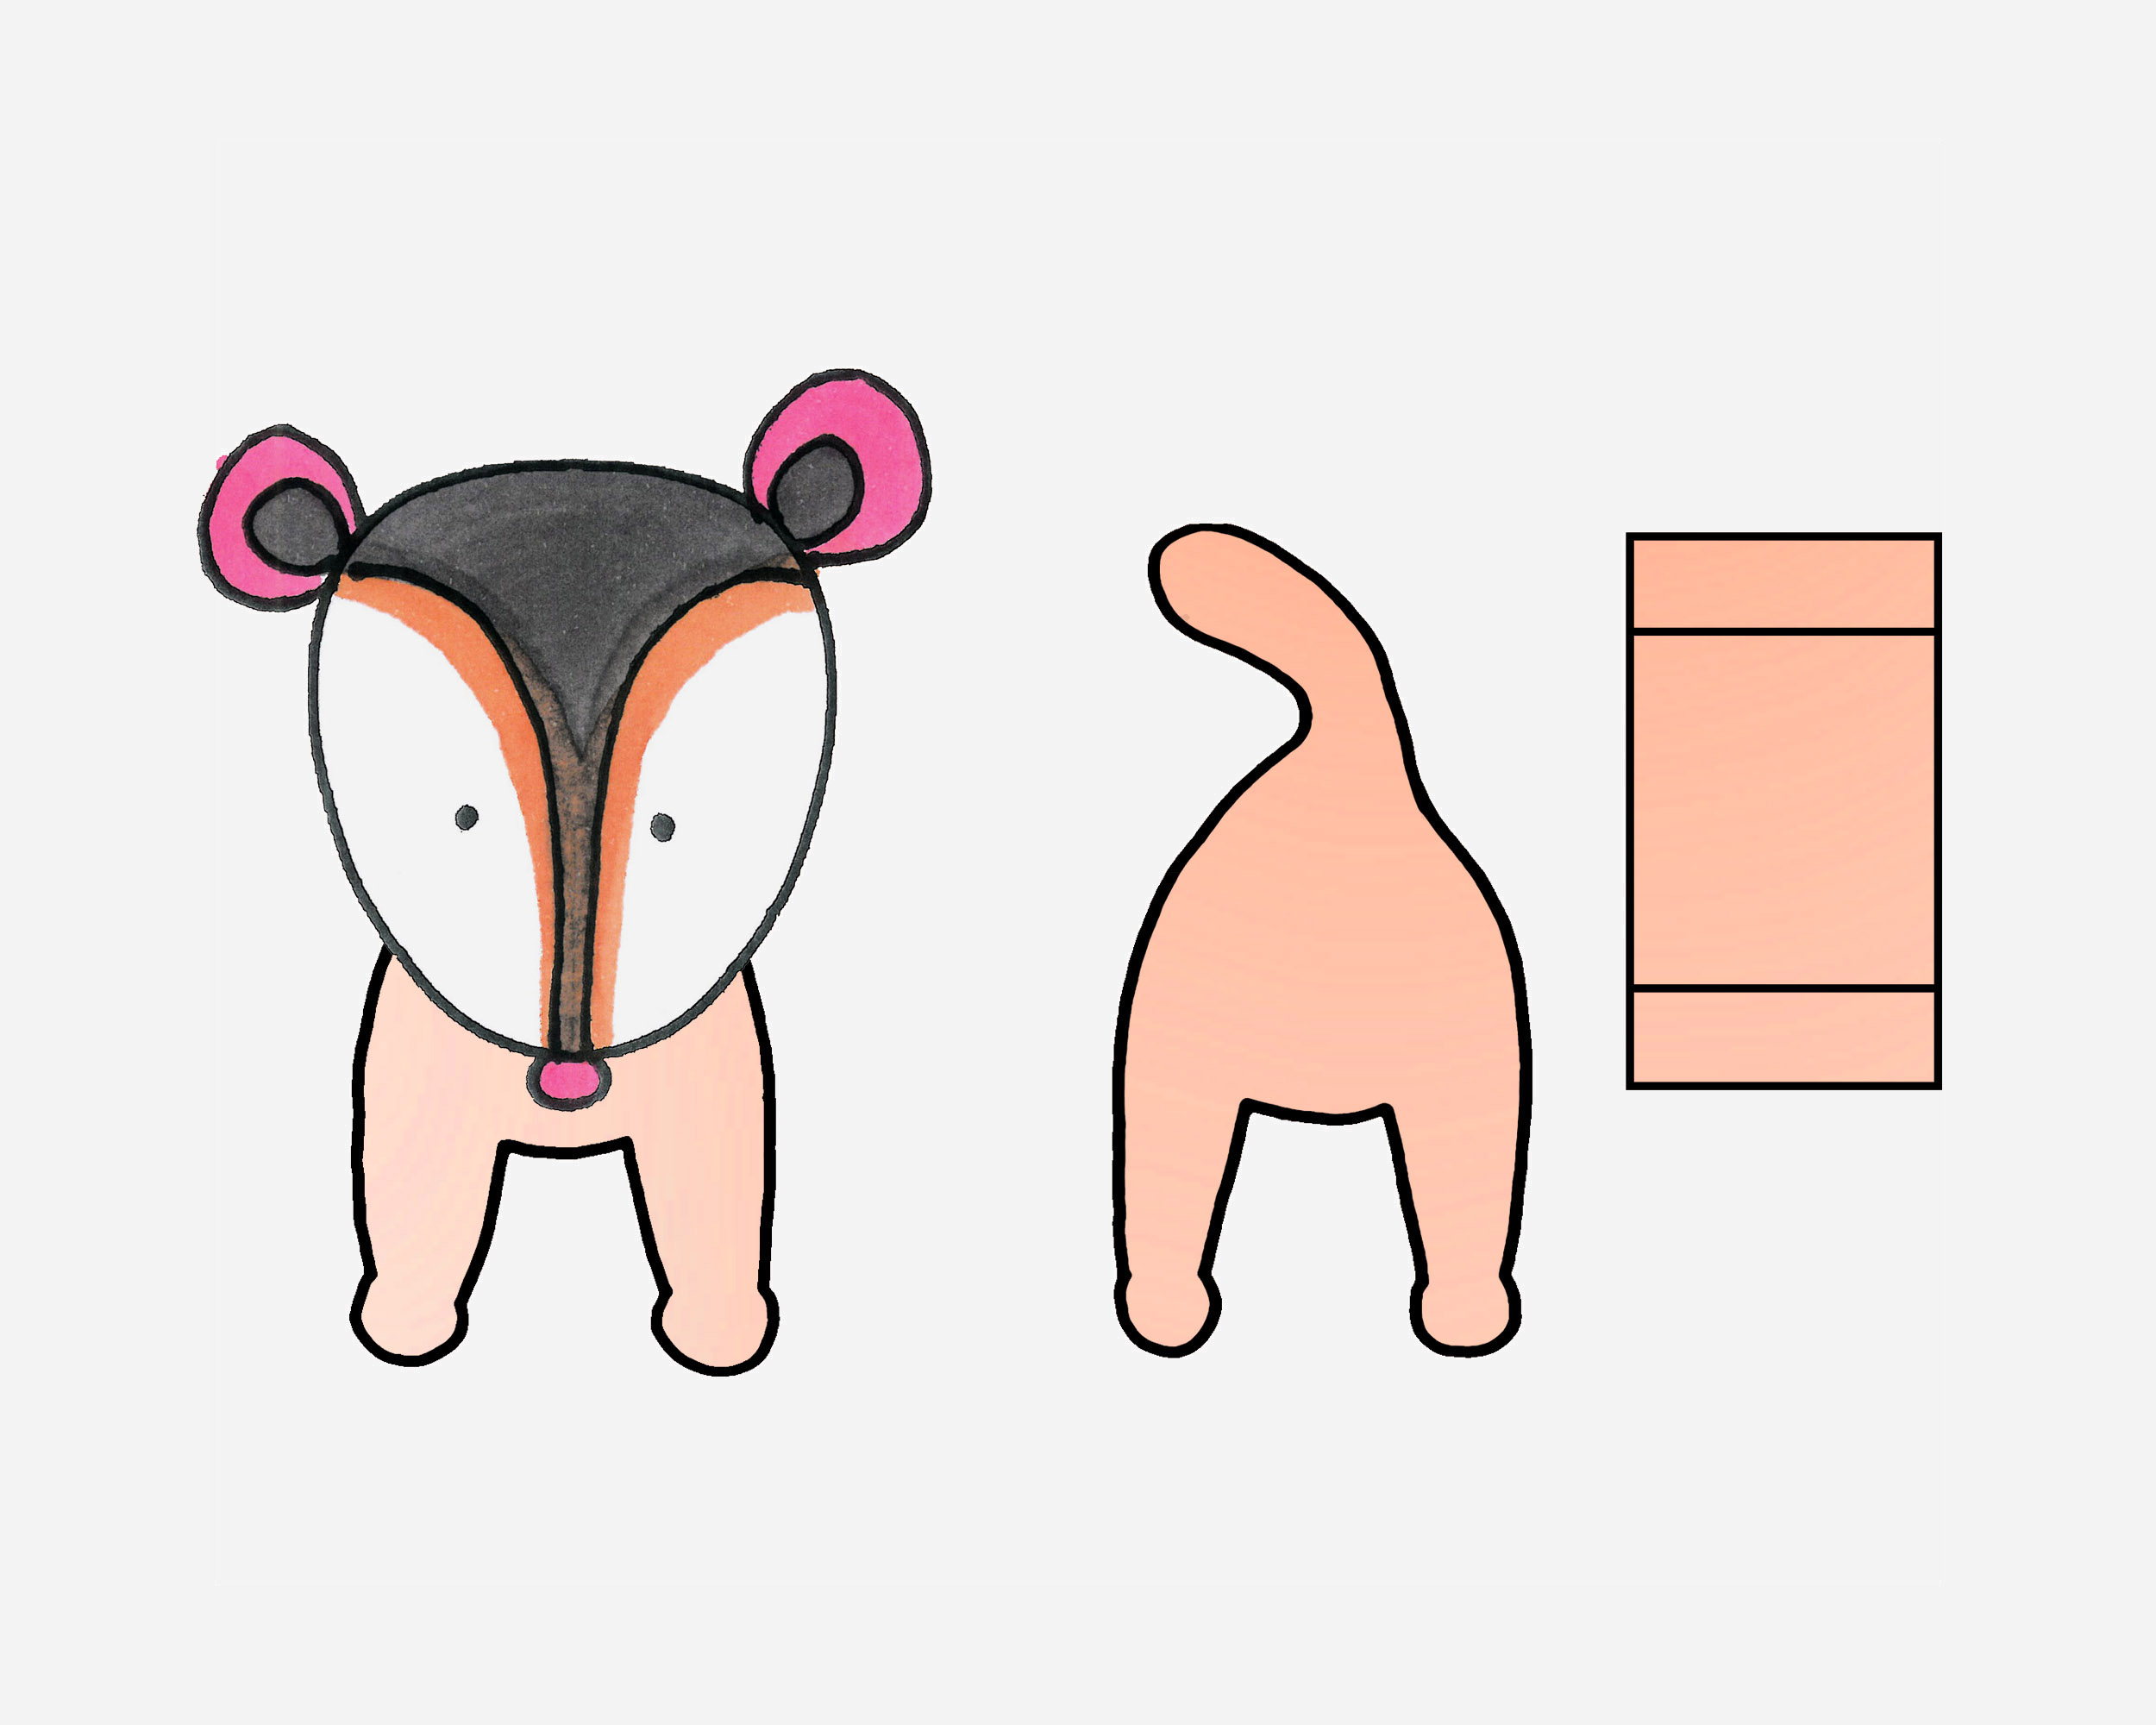 做一个可以拉伸的简单又漂亮小动物折纸贺卡果子狸折叠手工制作